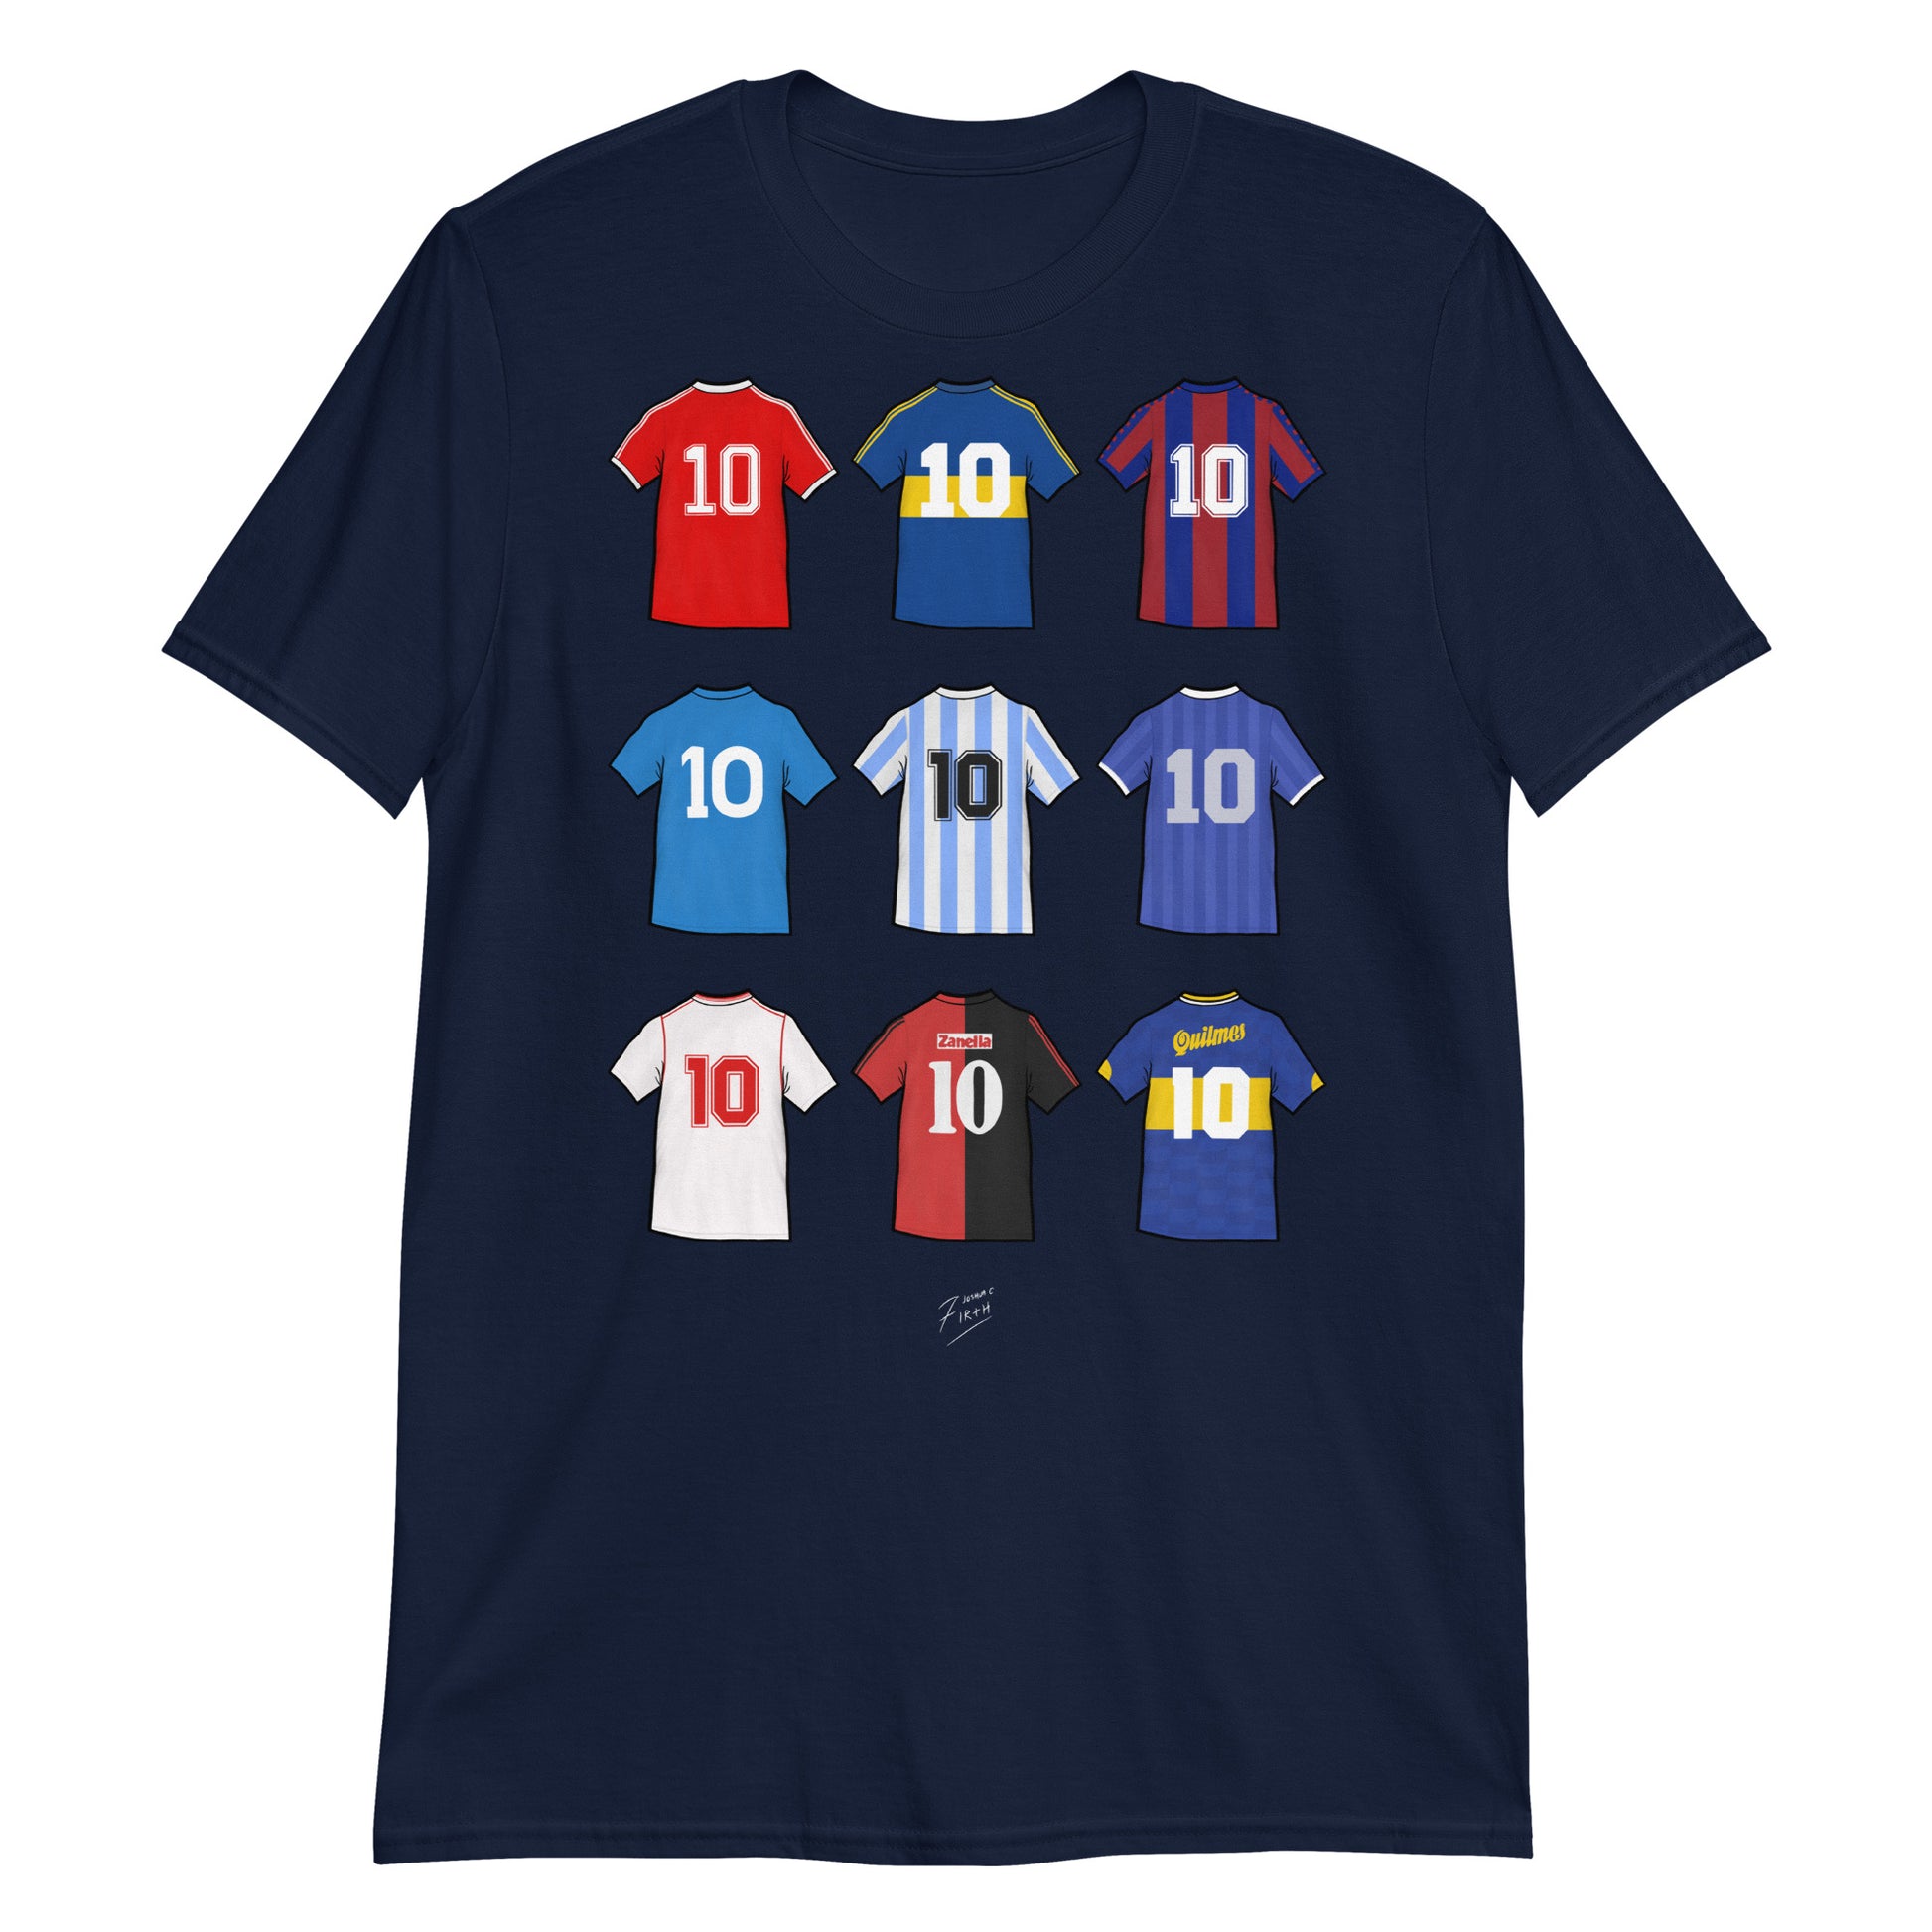 Diego Maradona Football Themed Navy Blue T-Shirt